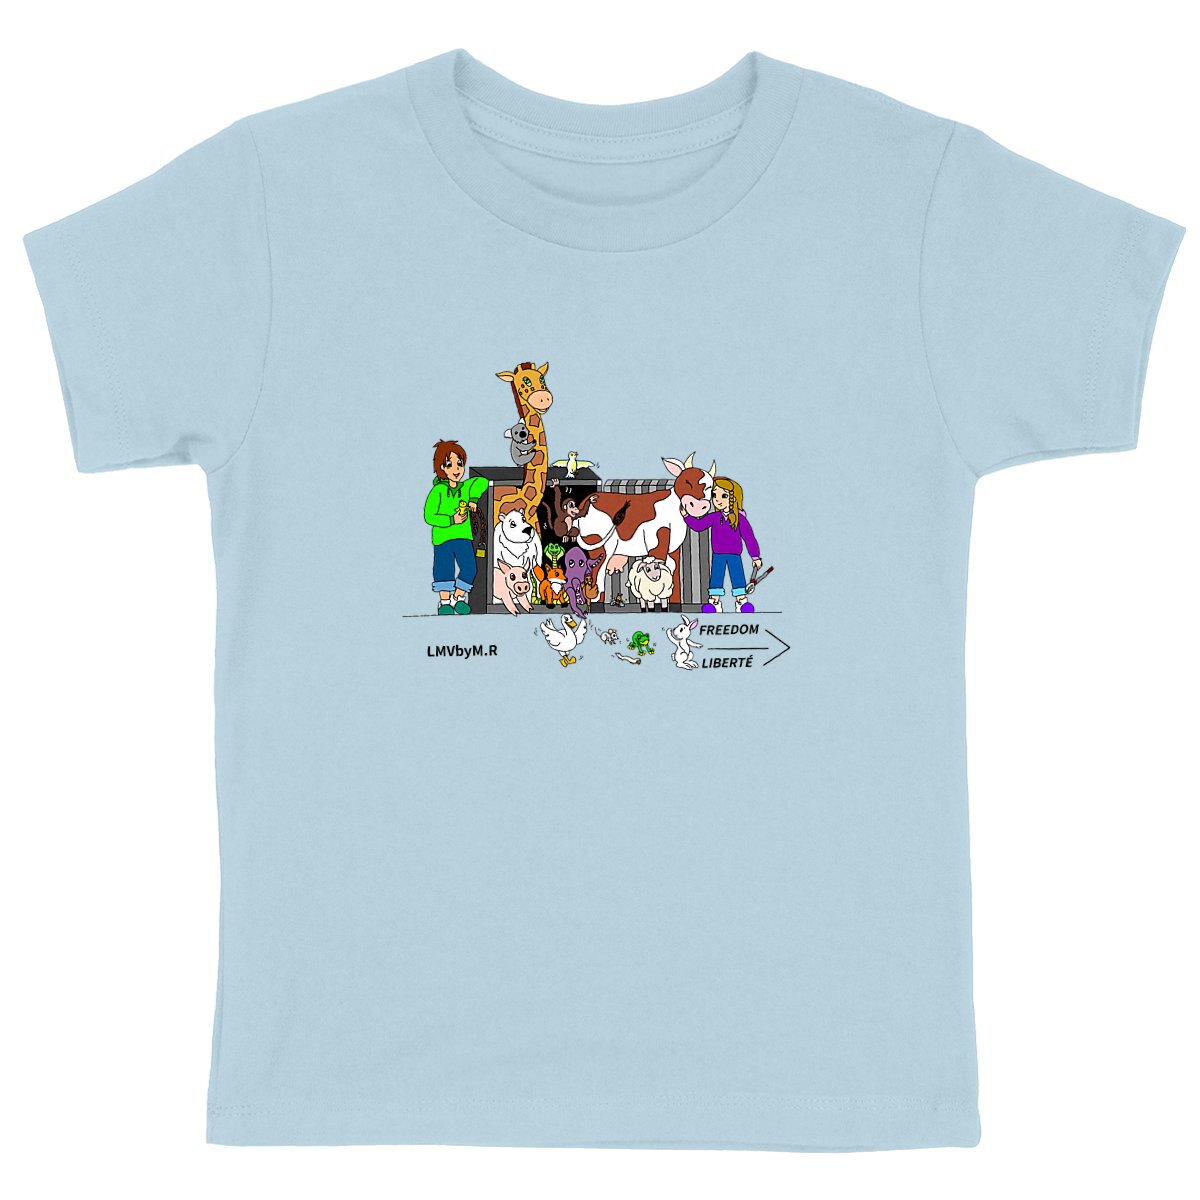 Tee-shirt Enfant LMV OUVRONS LES CAGES